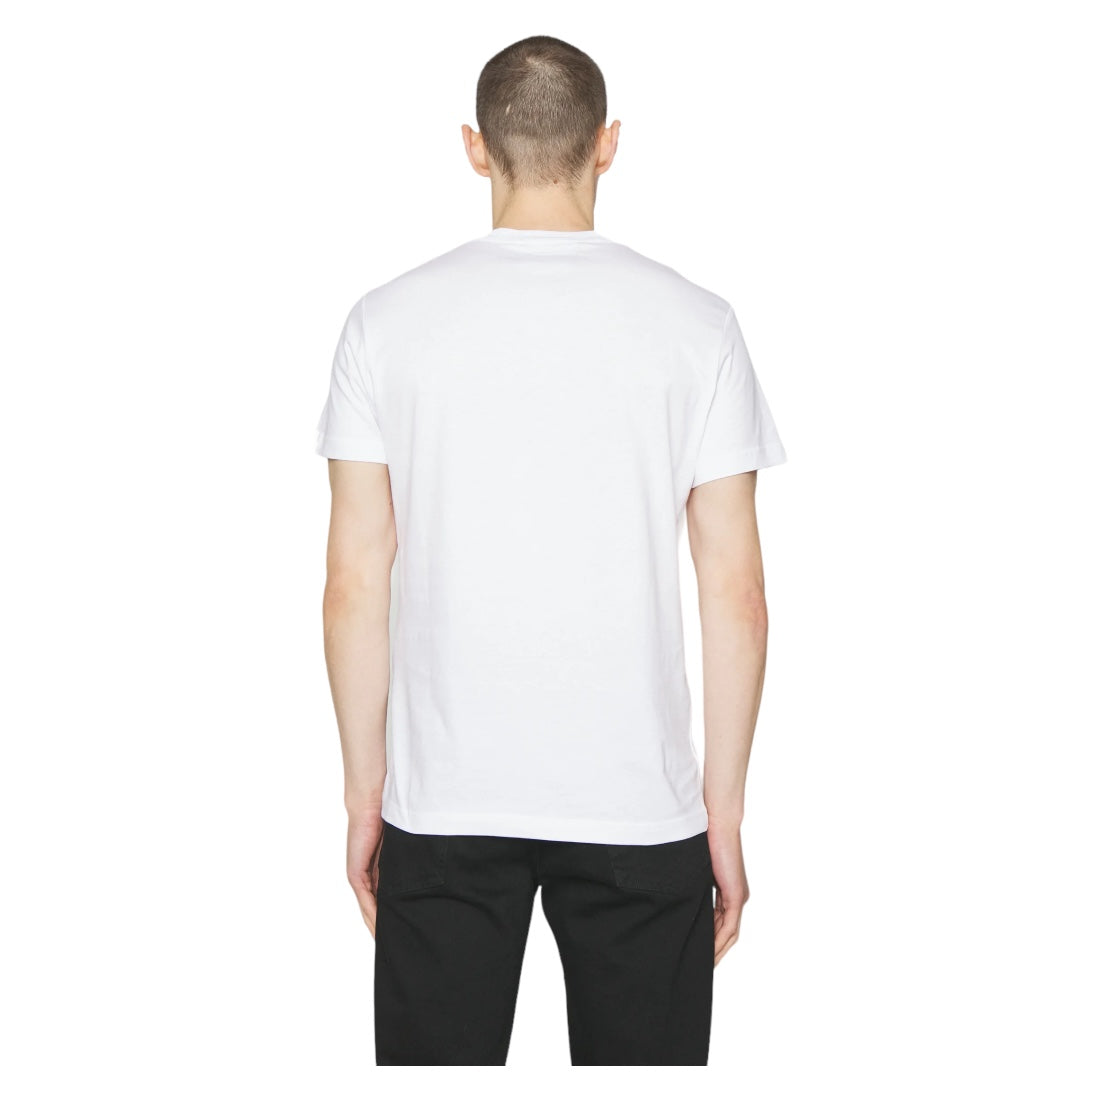 Versace Jeans Couture T-Shirt mit dickem Folienlogo, Weiß